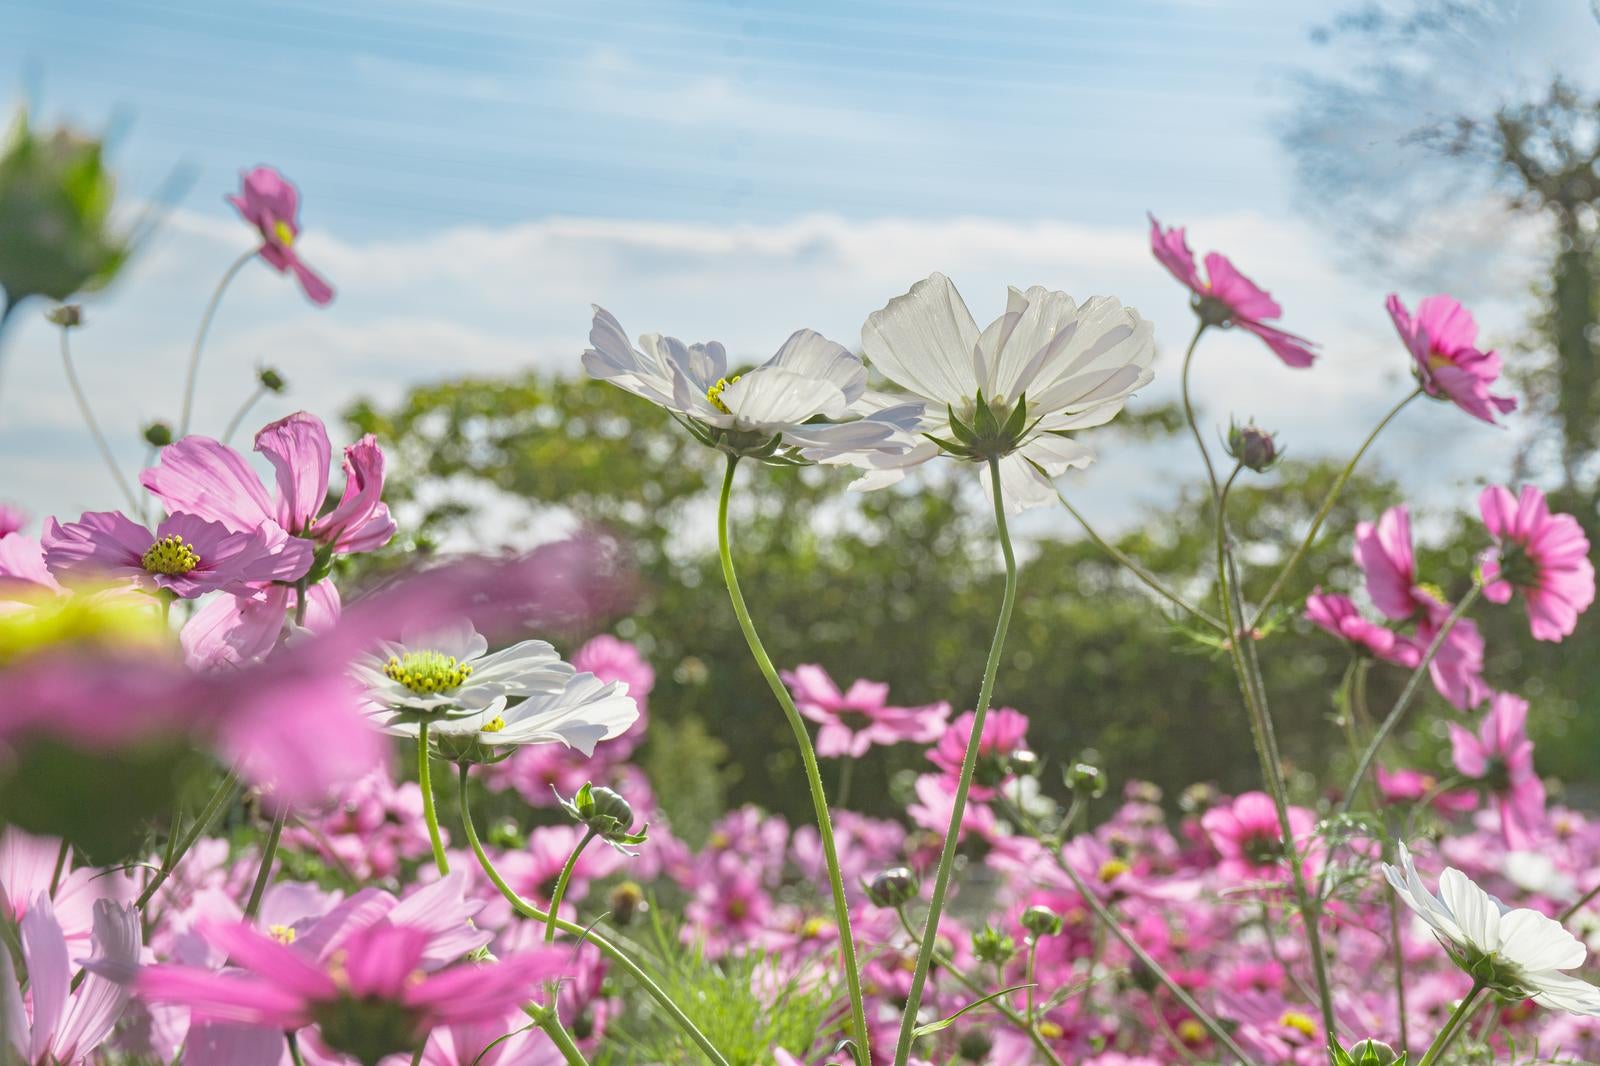 「ピンクのコスモスに囲まれて咲く白いコスモス」の写真